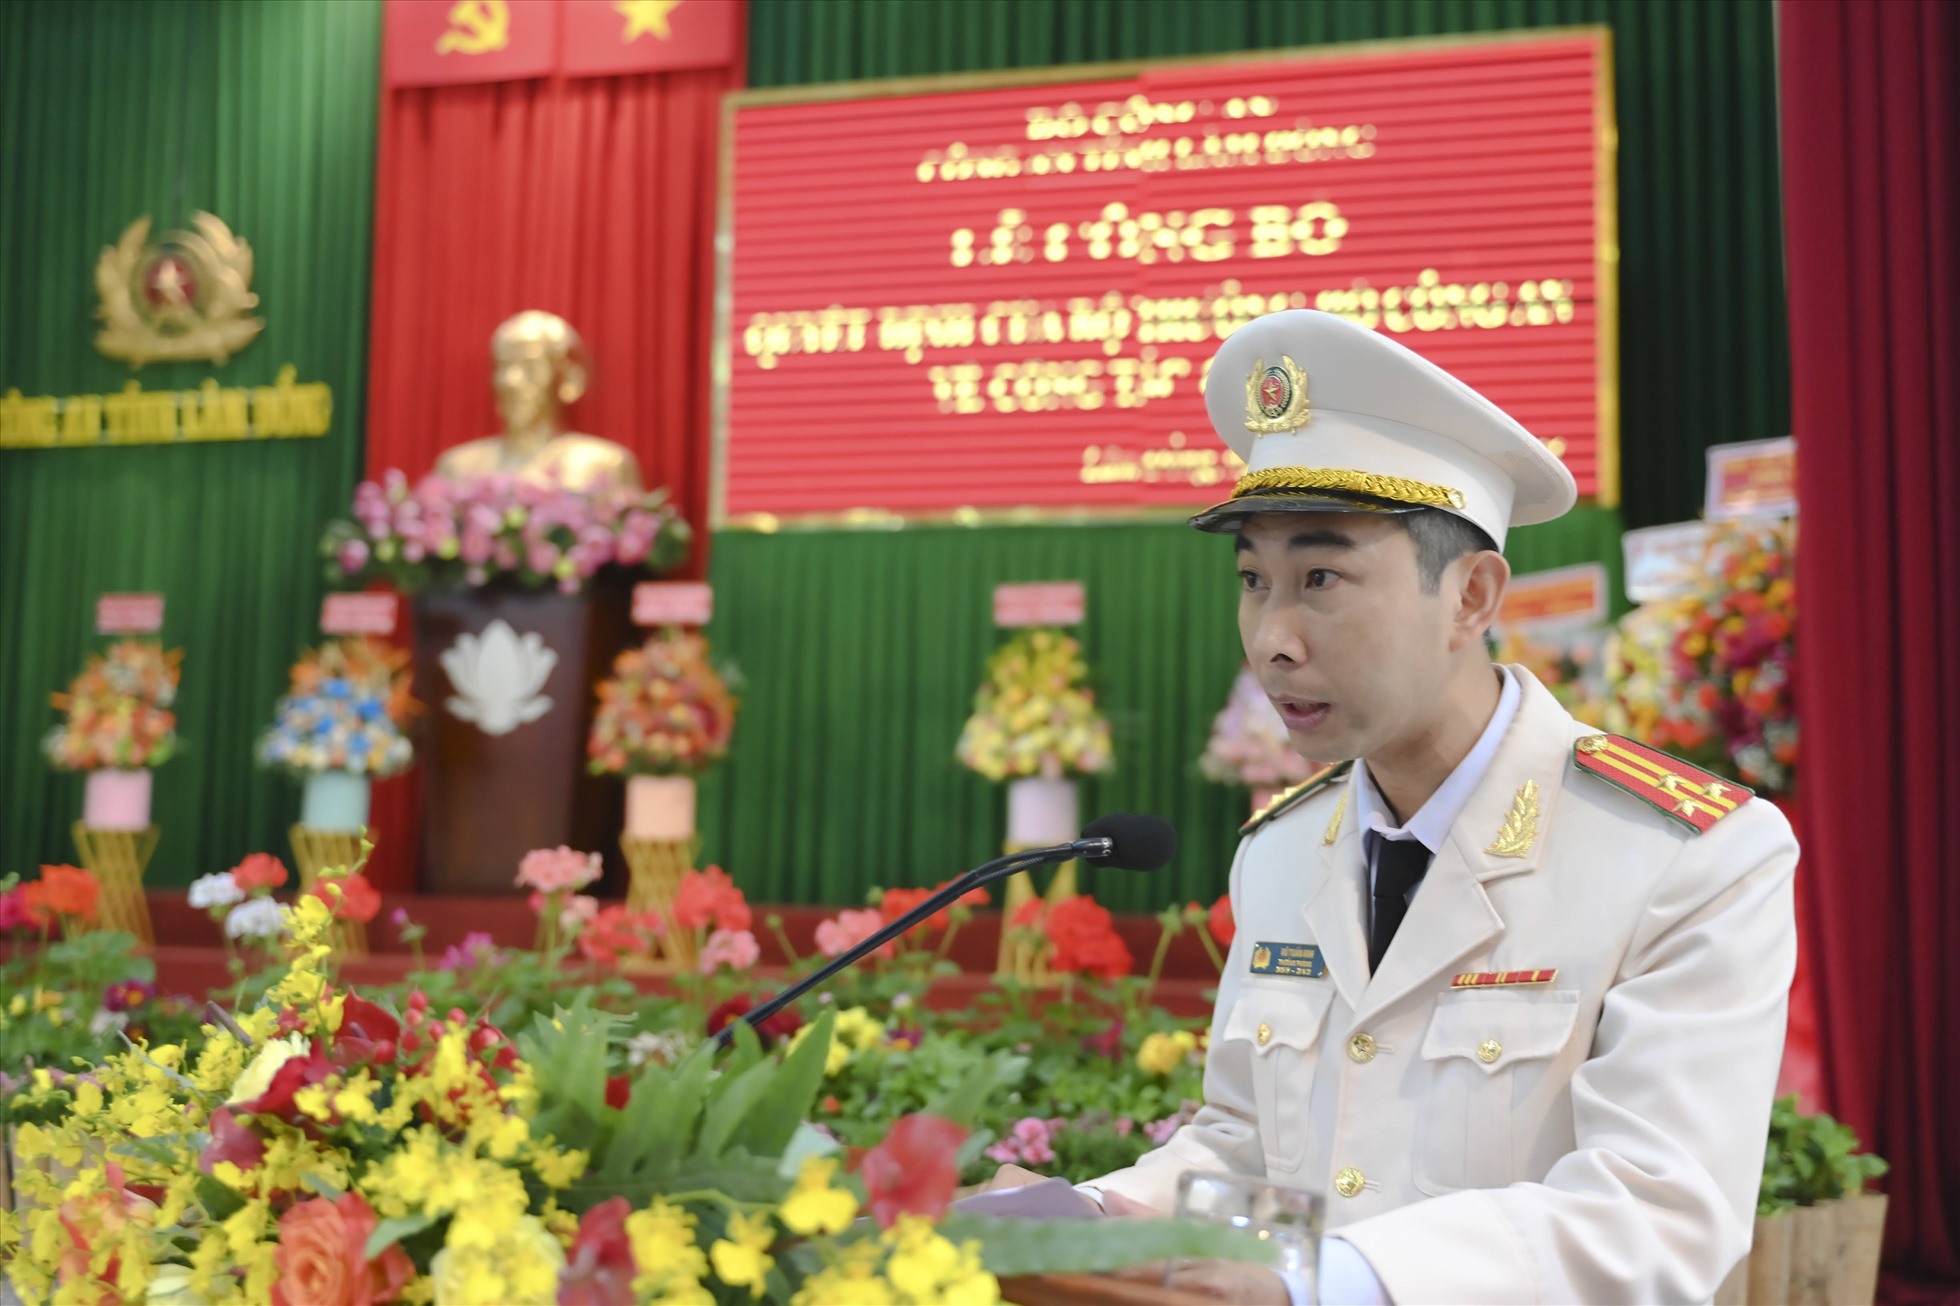 Thượng tá Vũ Tuấn Anh - tân Phó Giám đốc Công an tỉnh phát biểu nhận nhiệm vụ sau khi được bổ nhiệm. Ảnh: Công an tỉnh Lâm Đồng